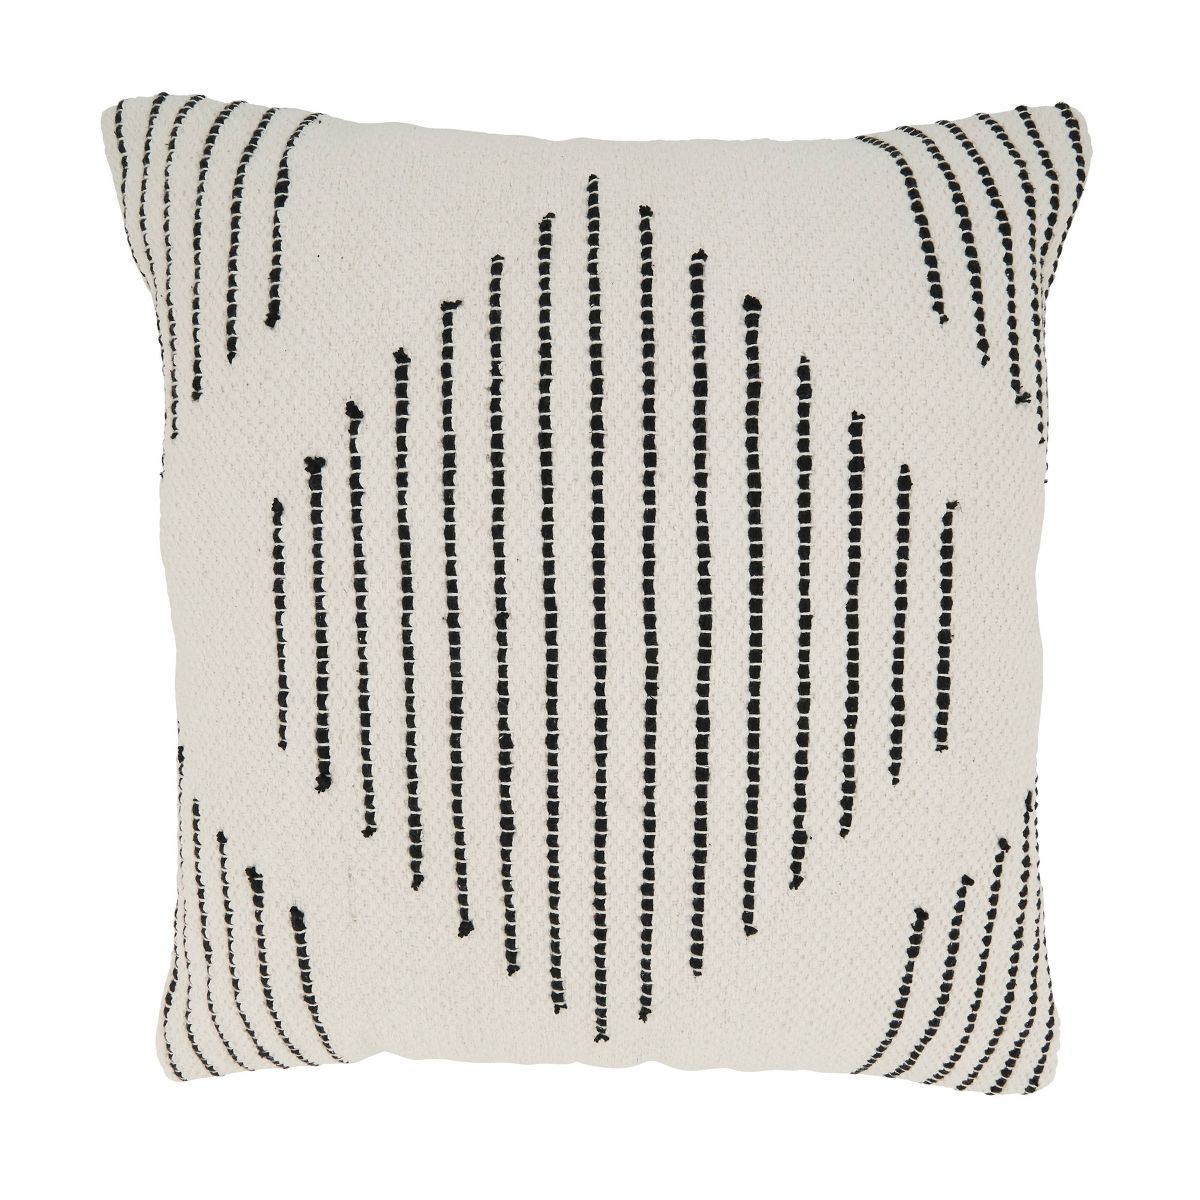 20"x20" Oversize Geometric Grace Diamond Woven Poly Filled Square Throw Pillow - Saro Lifestyle | Target